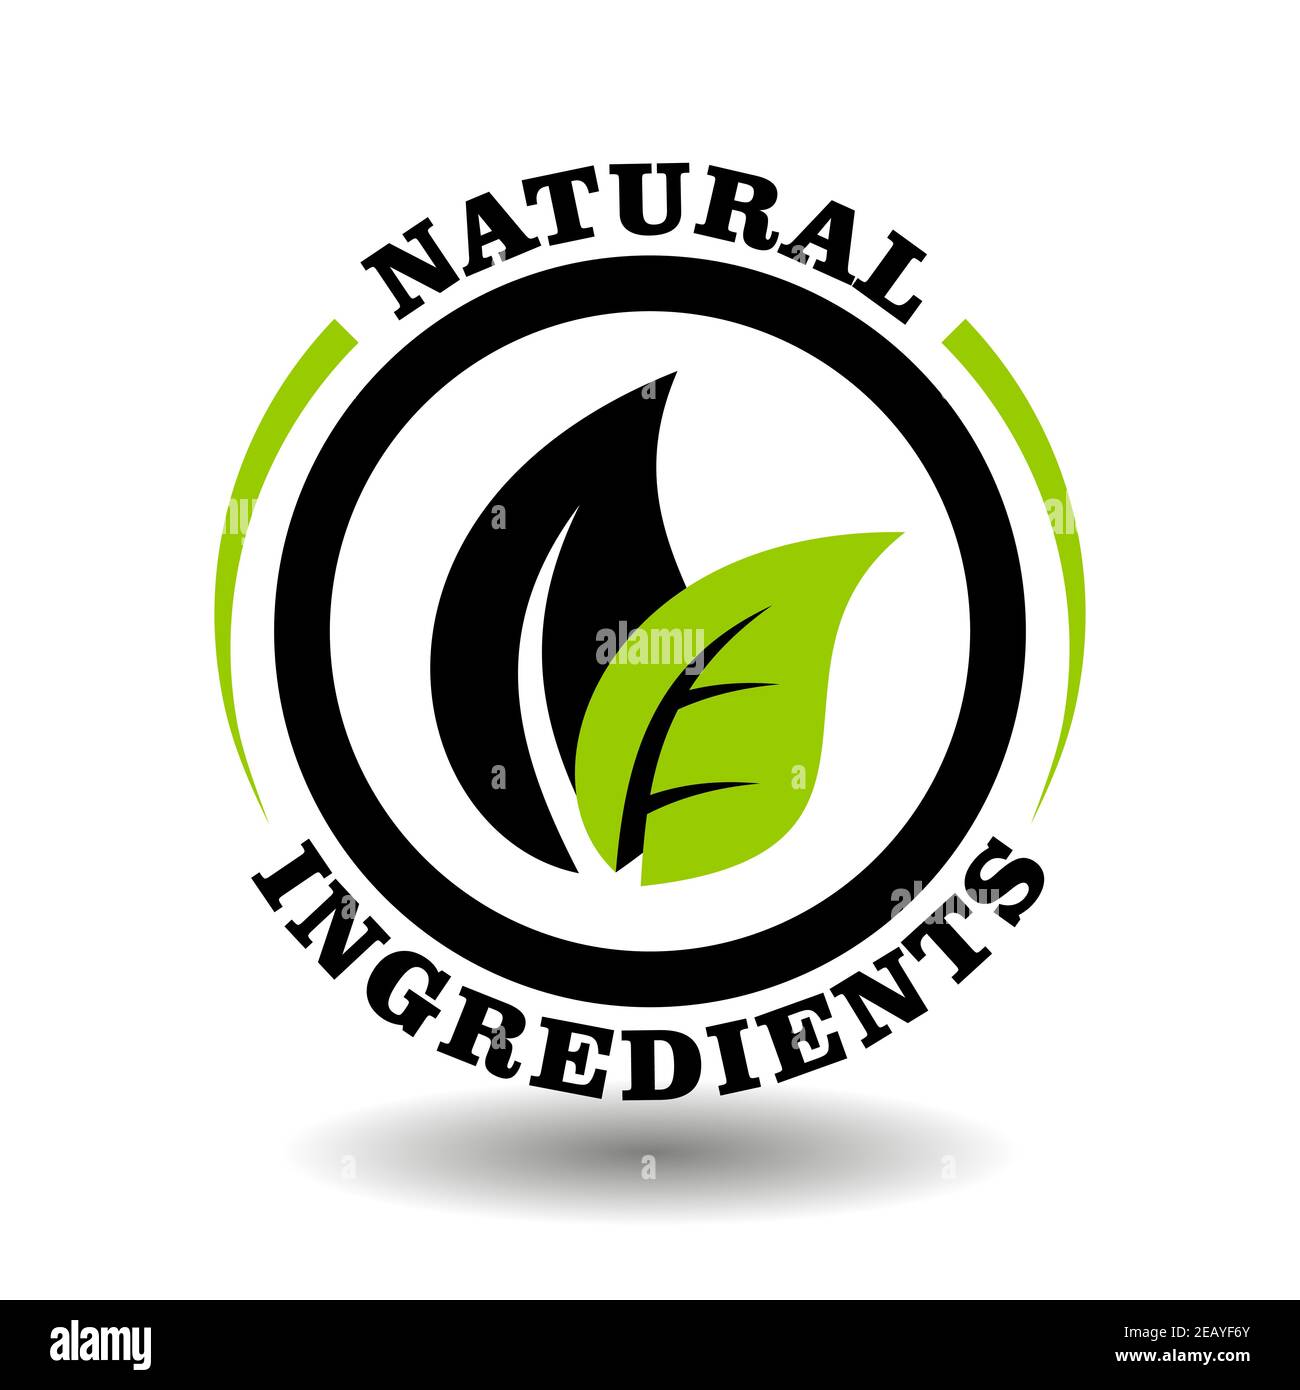 Natürliche Öko Zutaten Vektor Stempel mit grünen Blatt Illustration. Rundes Logo für die Zertifizierung von Bio-Kosmetik Verpackung Zeichen Stock Vektor